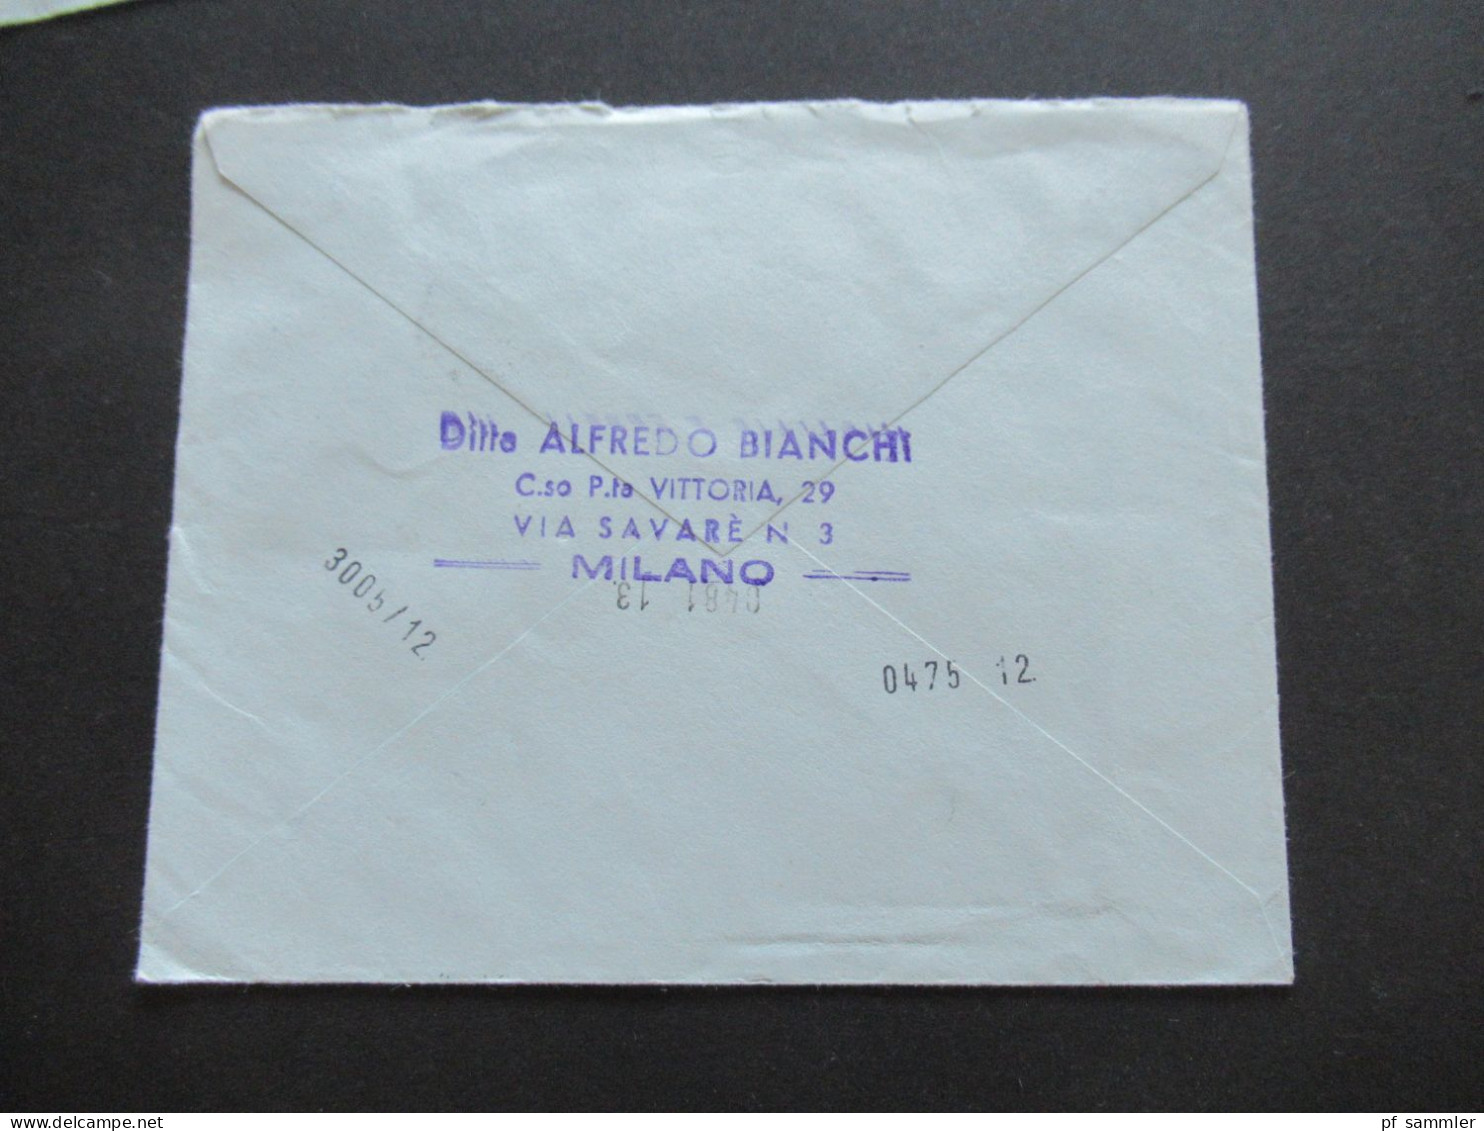 Italien 1963 - 1965 kl. Belegeposten teils Firmenbriefe 5 Stk. Auslandsbriefe / Espresso Eilbote nach Menden Sauerland